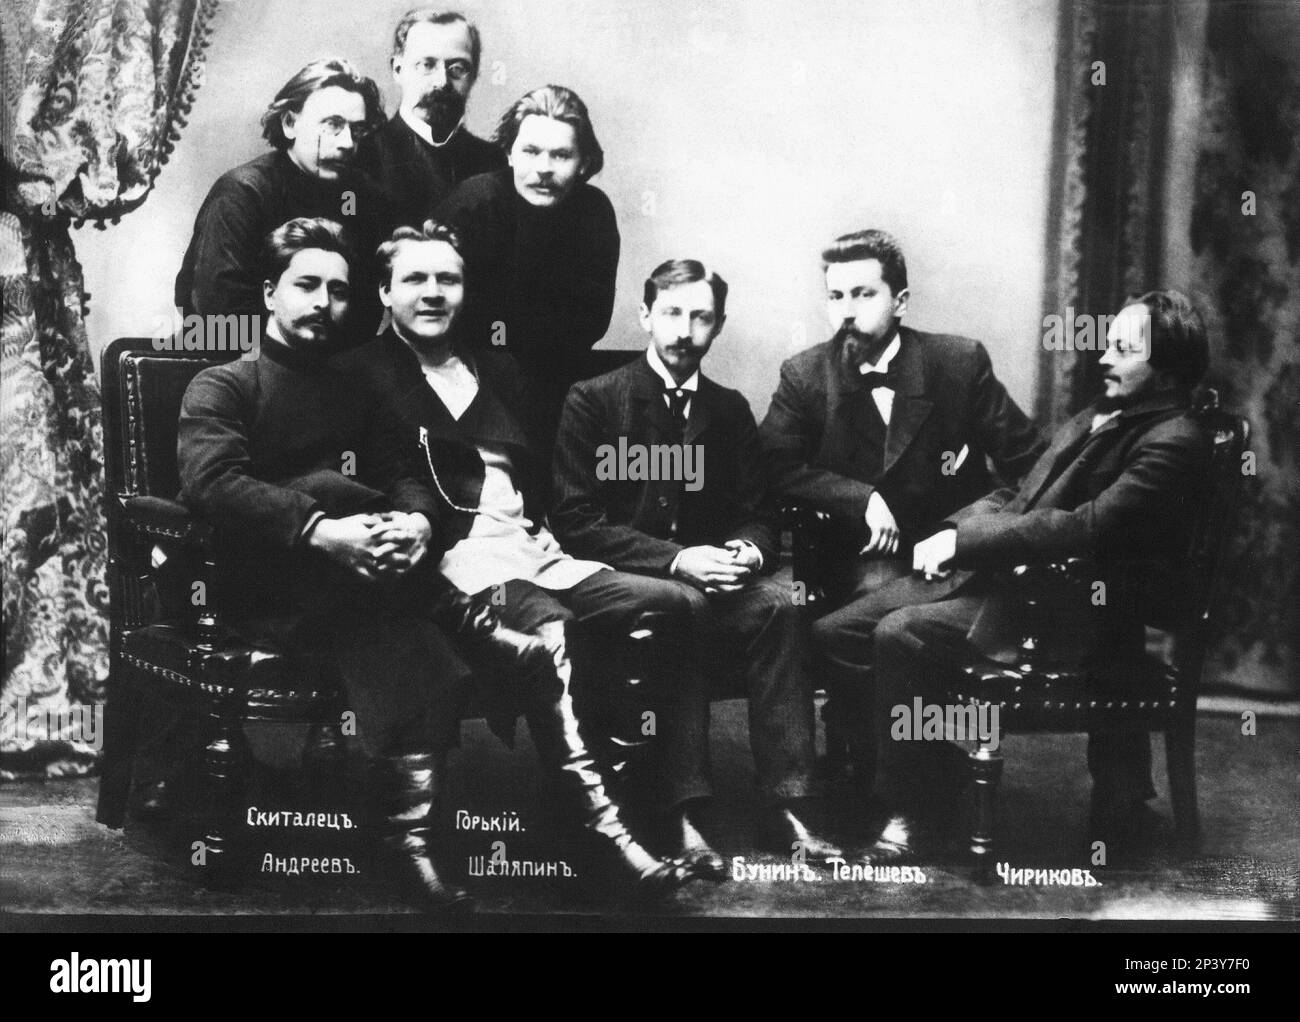 1871 , Moskow , Russland : der Schriftsteller Leonid ANDREEV mit MAKSIM GORKY ( Nizni Novgorod 1868 - Moskow 1936 ) , der Tenore-Sänger SHALYAPIN , der Dichter und Schriftsteller IVAN BUNIN ( 1870 - 1953 ) , der Schriftsteller Stepan Gaurilovich Petrov SKITALETS , Nikolaj Dmitrievitch TELESHOV und TCHIRKOV - SCRITTORE - POETA - POESIA - DRAMMATURGO - PLAYWRITER - DRAMATIST - COMMEDIOGRAFO - TEATRO - THEATER - POESIE - ritratto - Baffi - Schnurrbart - socialismo - socialista - socialdi - GORSTI - Socialdi - Socialidi - socialiti LIRICA --- Archivio GBB Stockfoto